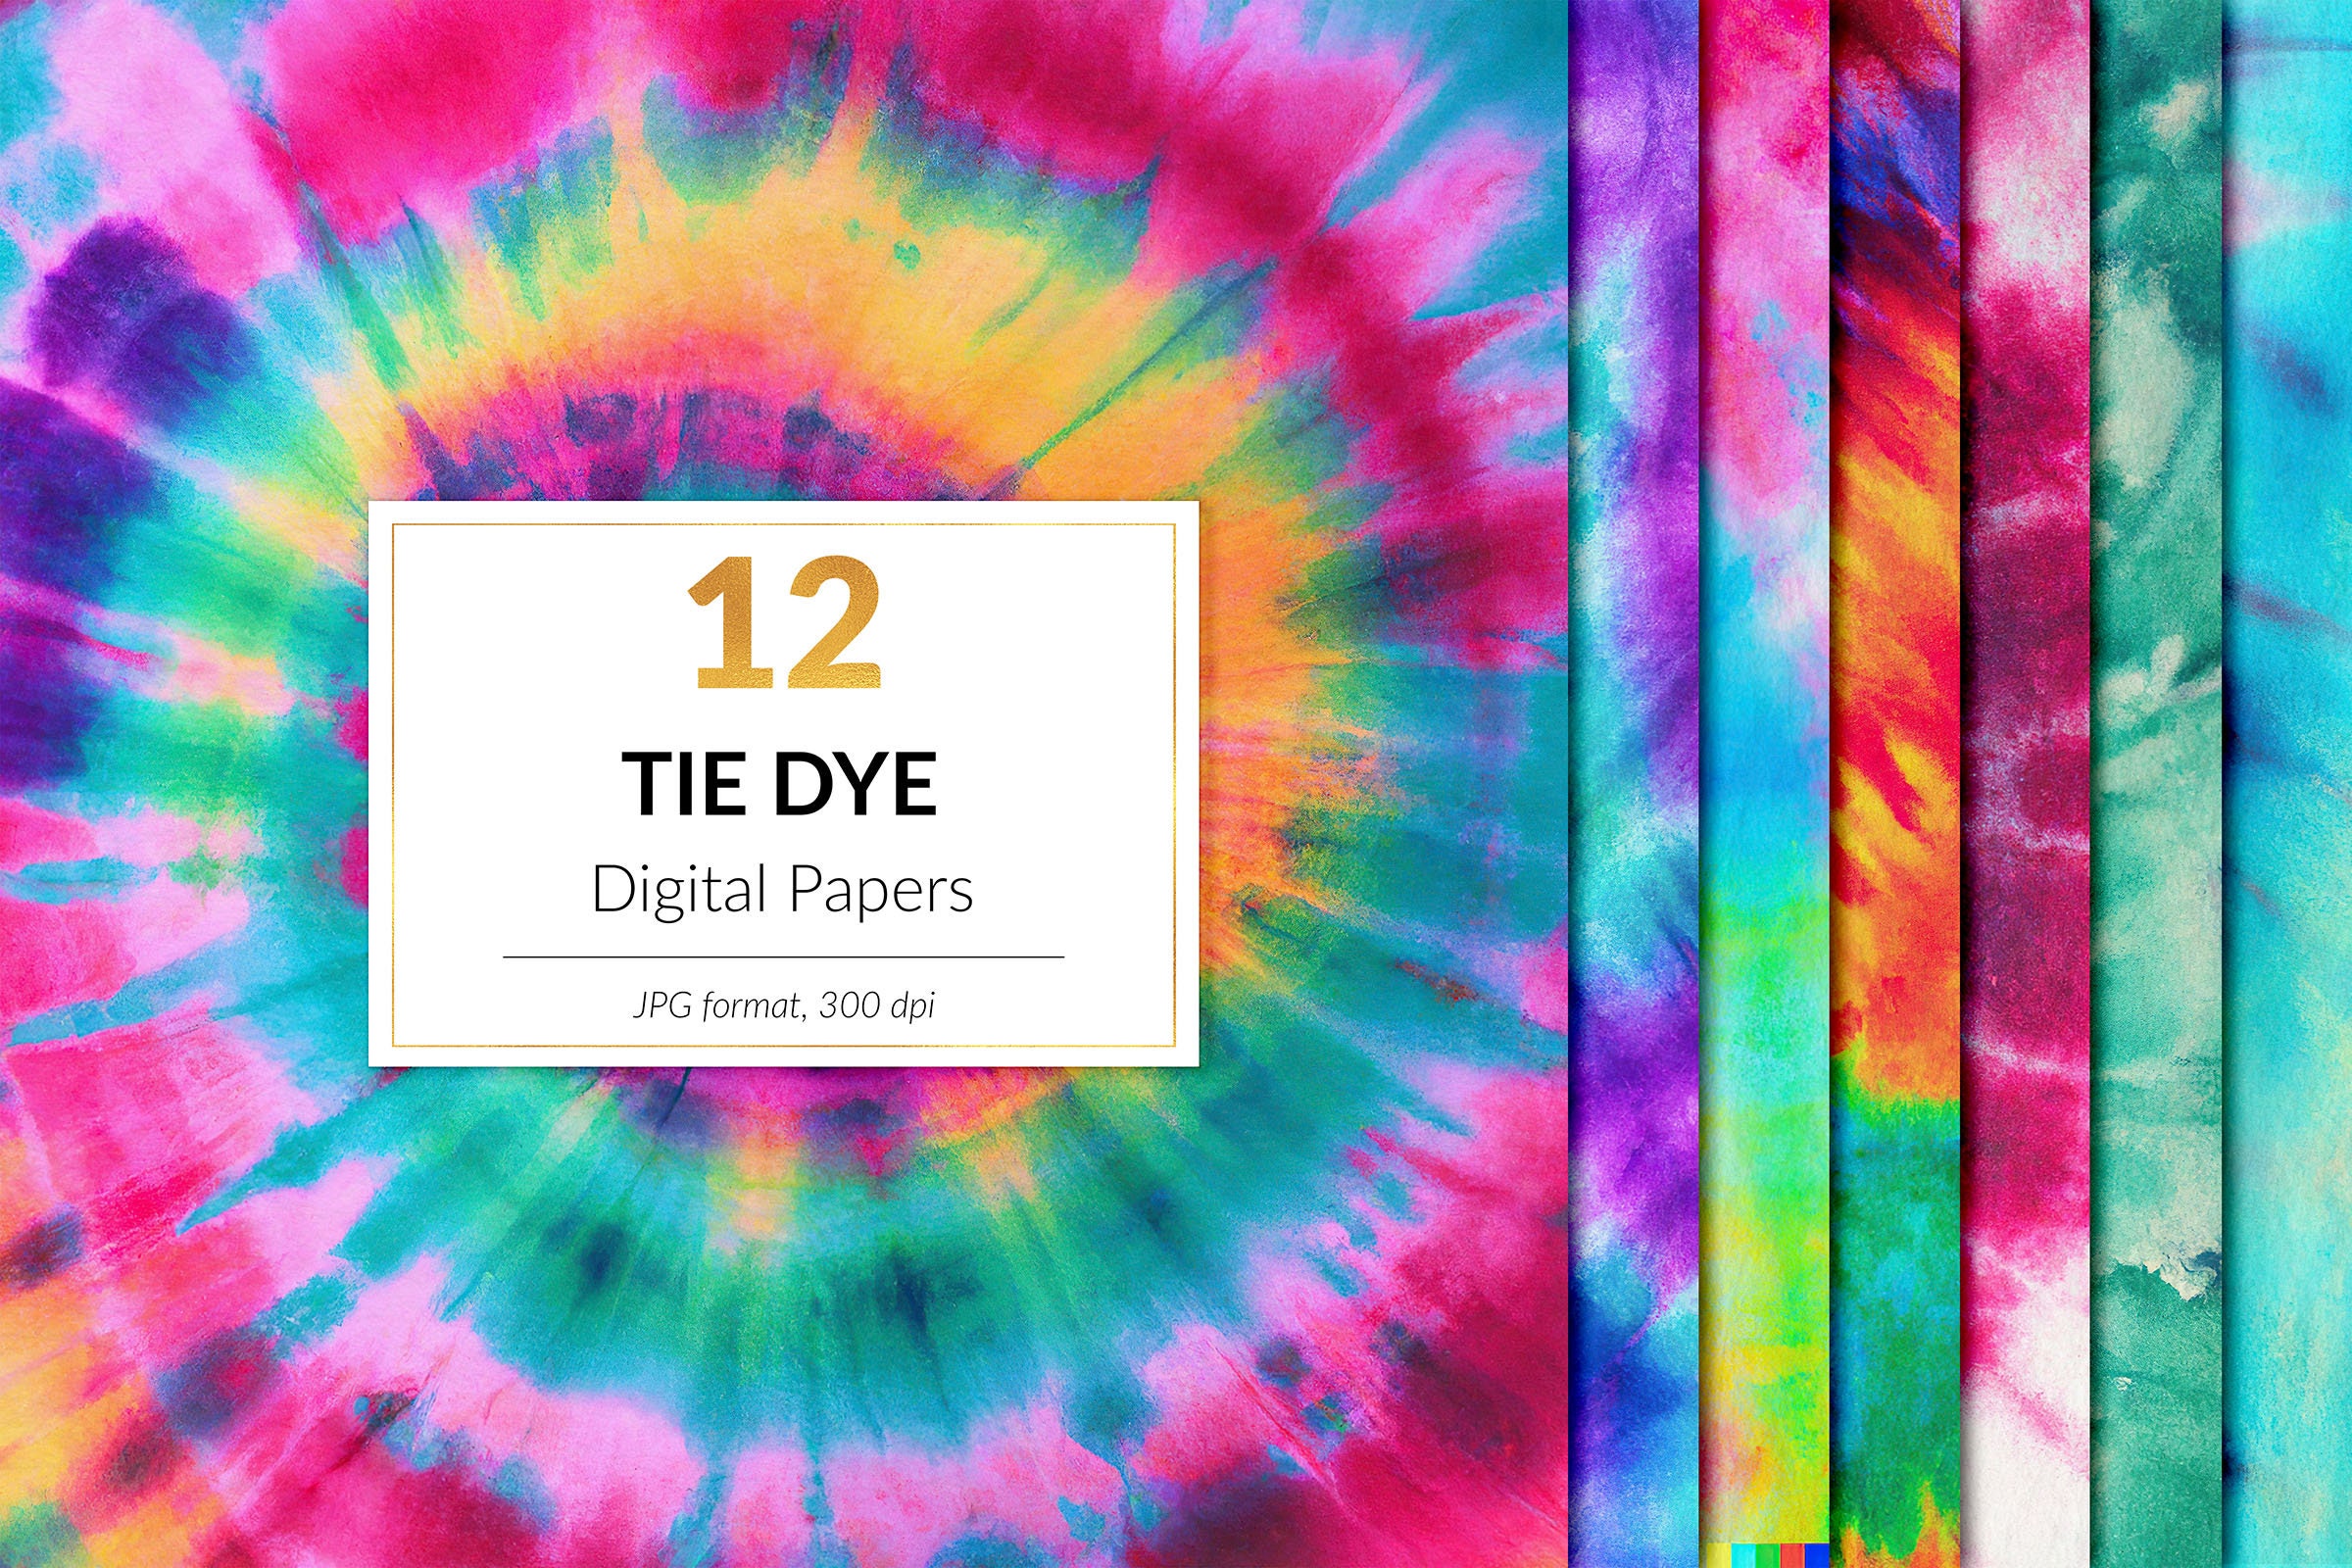 Printable Tie Dye Birthday Banner, DIY, Tie Dye Banner, Tie Dye